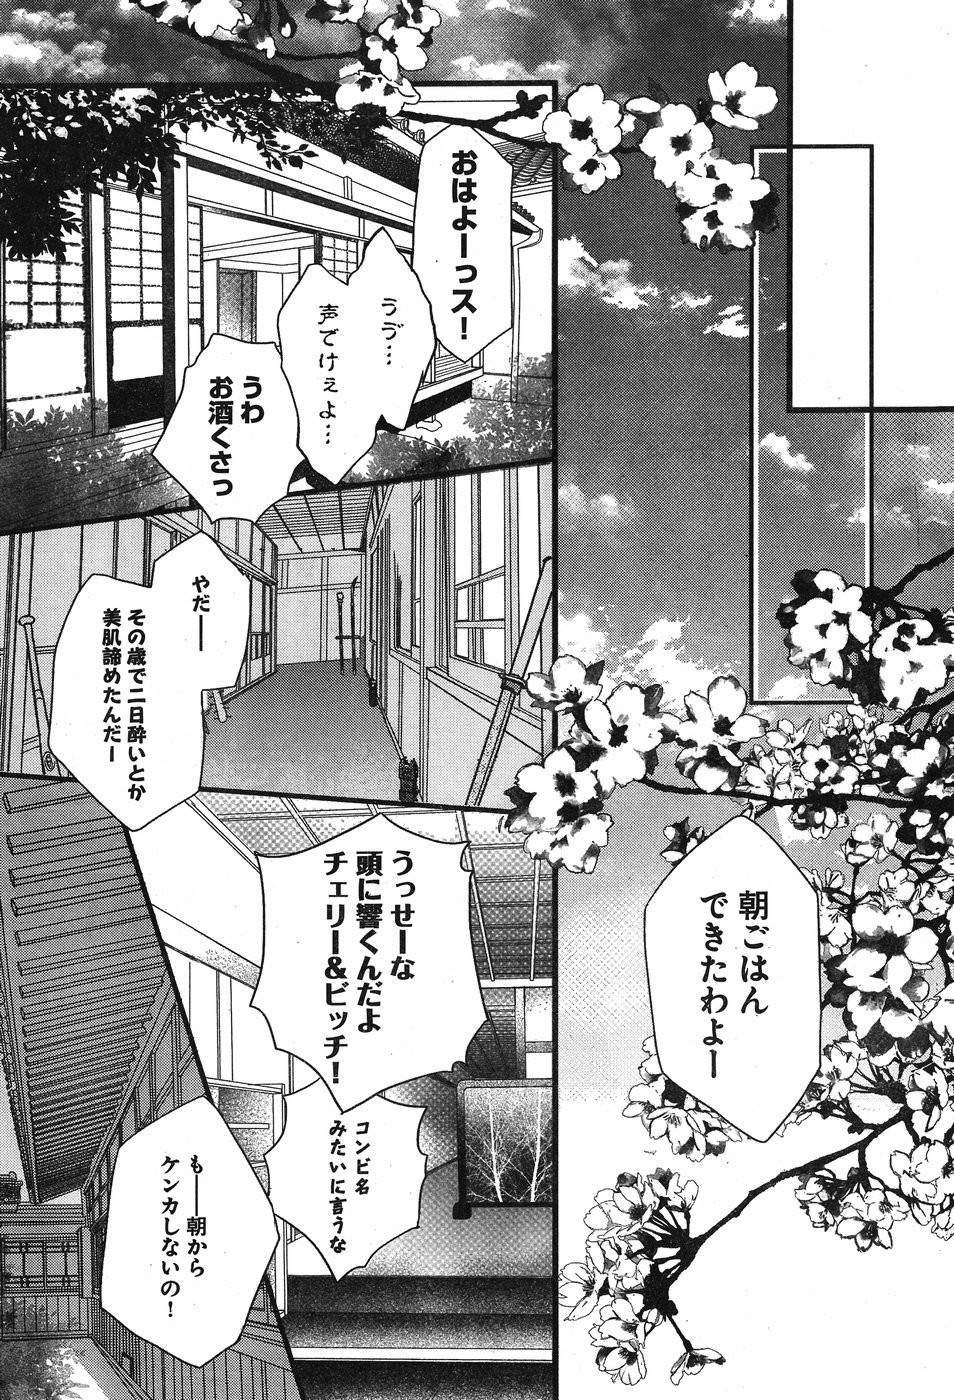 Bokura wa Minna Kawaisou - Chapter 90 - Page 30